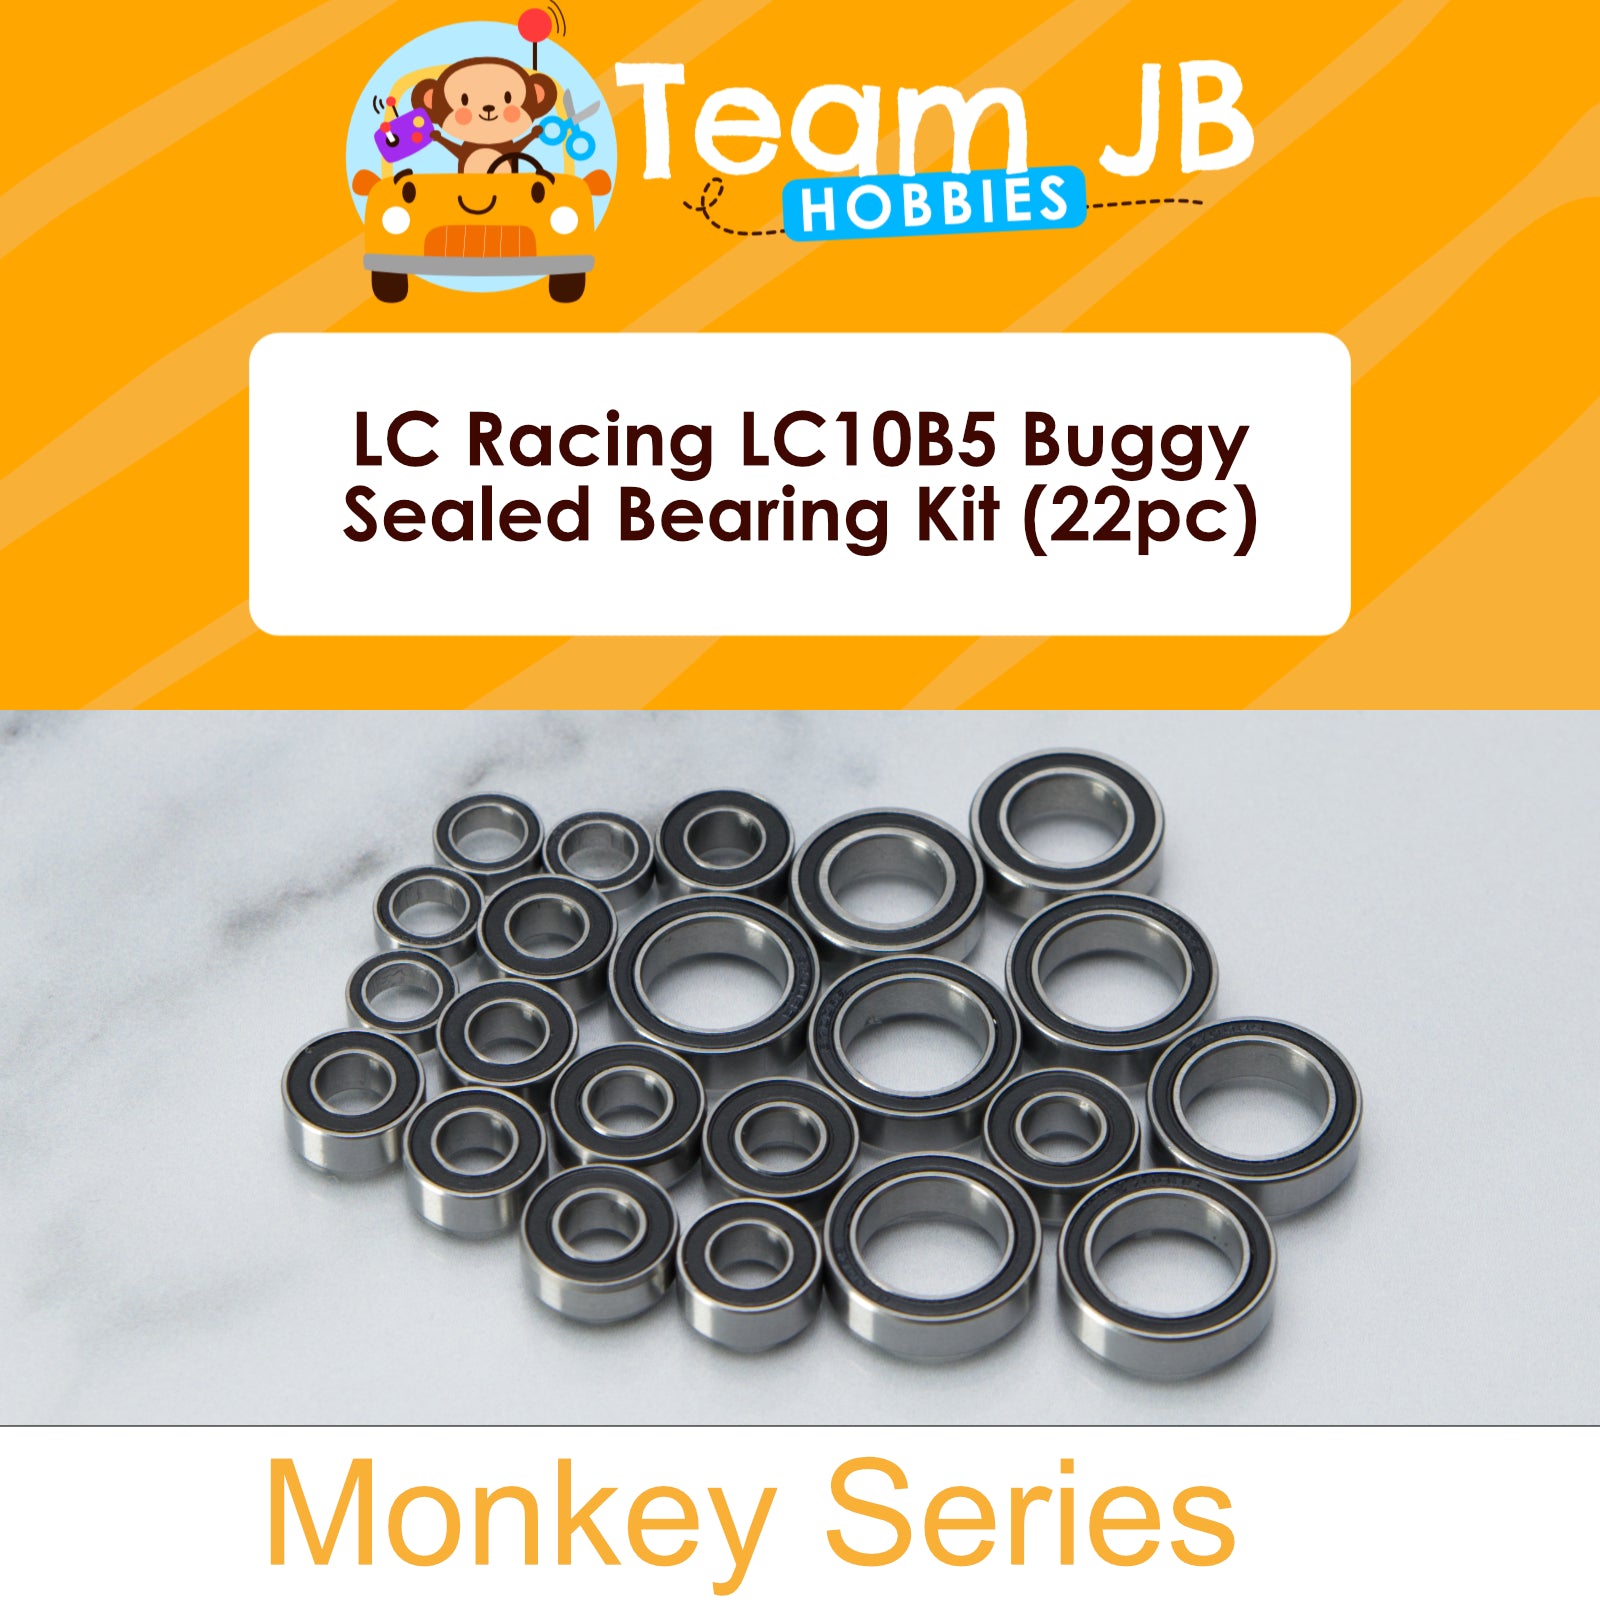 LC Racing LC10B5 Buggy - Sealed Bearing Kit